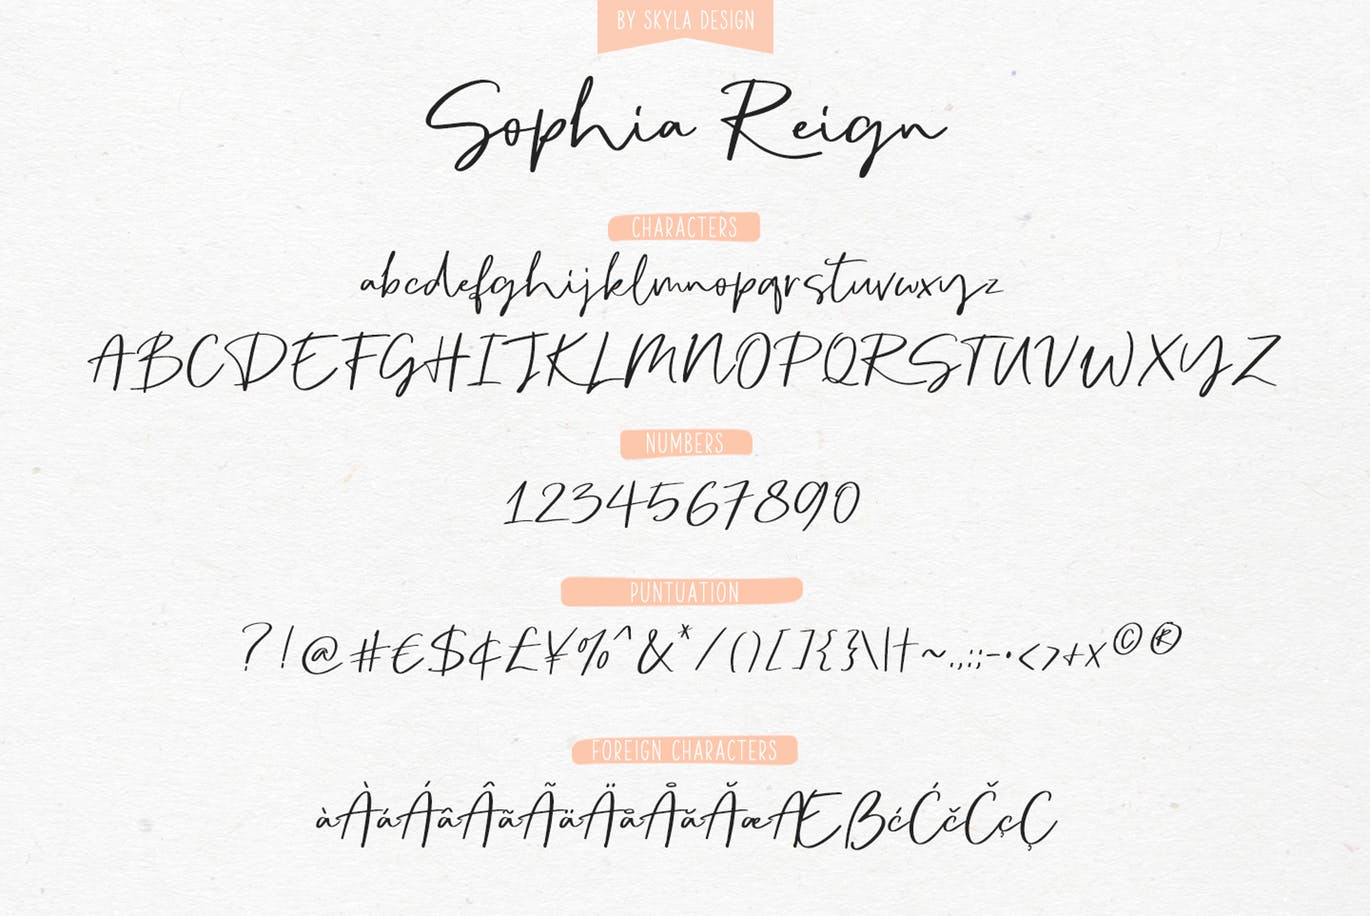 英文钢笔签名字体大洋岛精选&大写字母正楷字体大洋岛精选二重奏 Sophia Reign signature font duo插图10